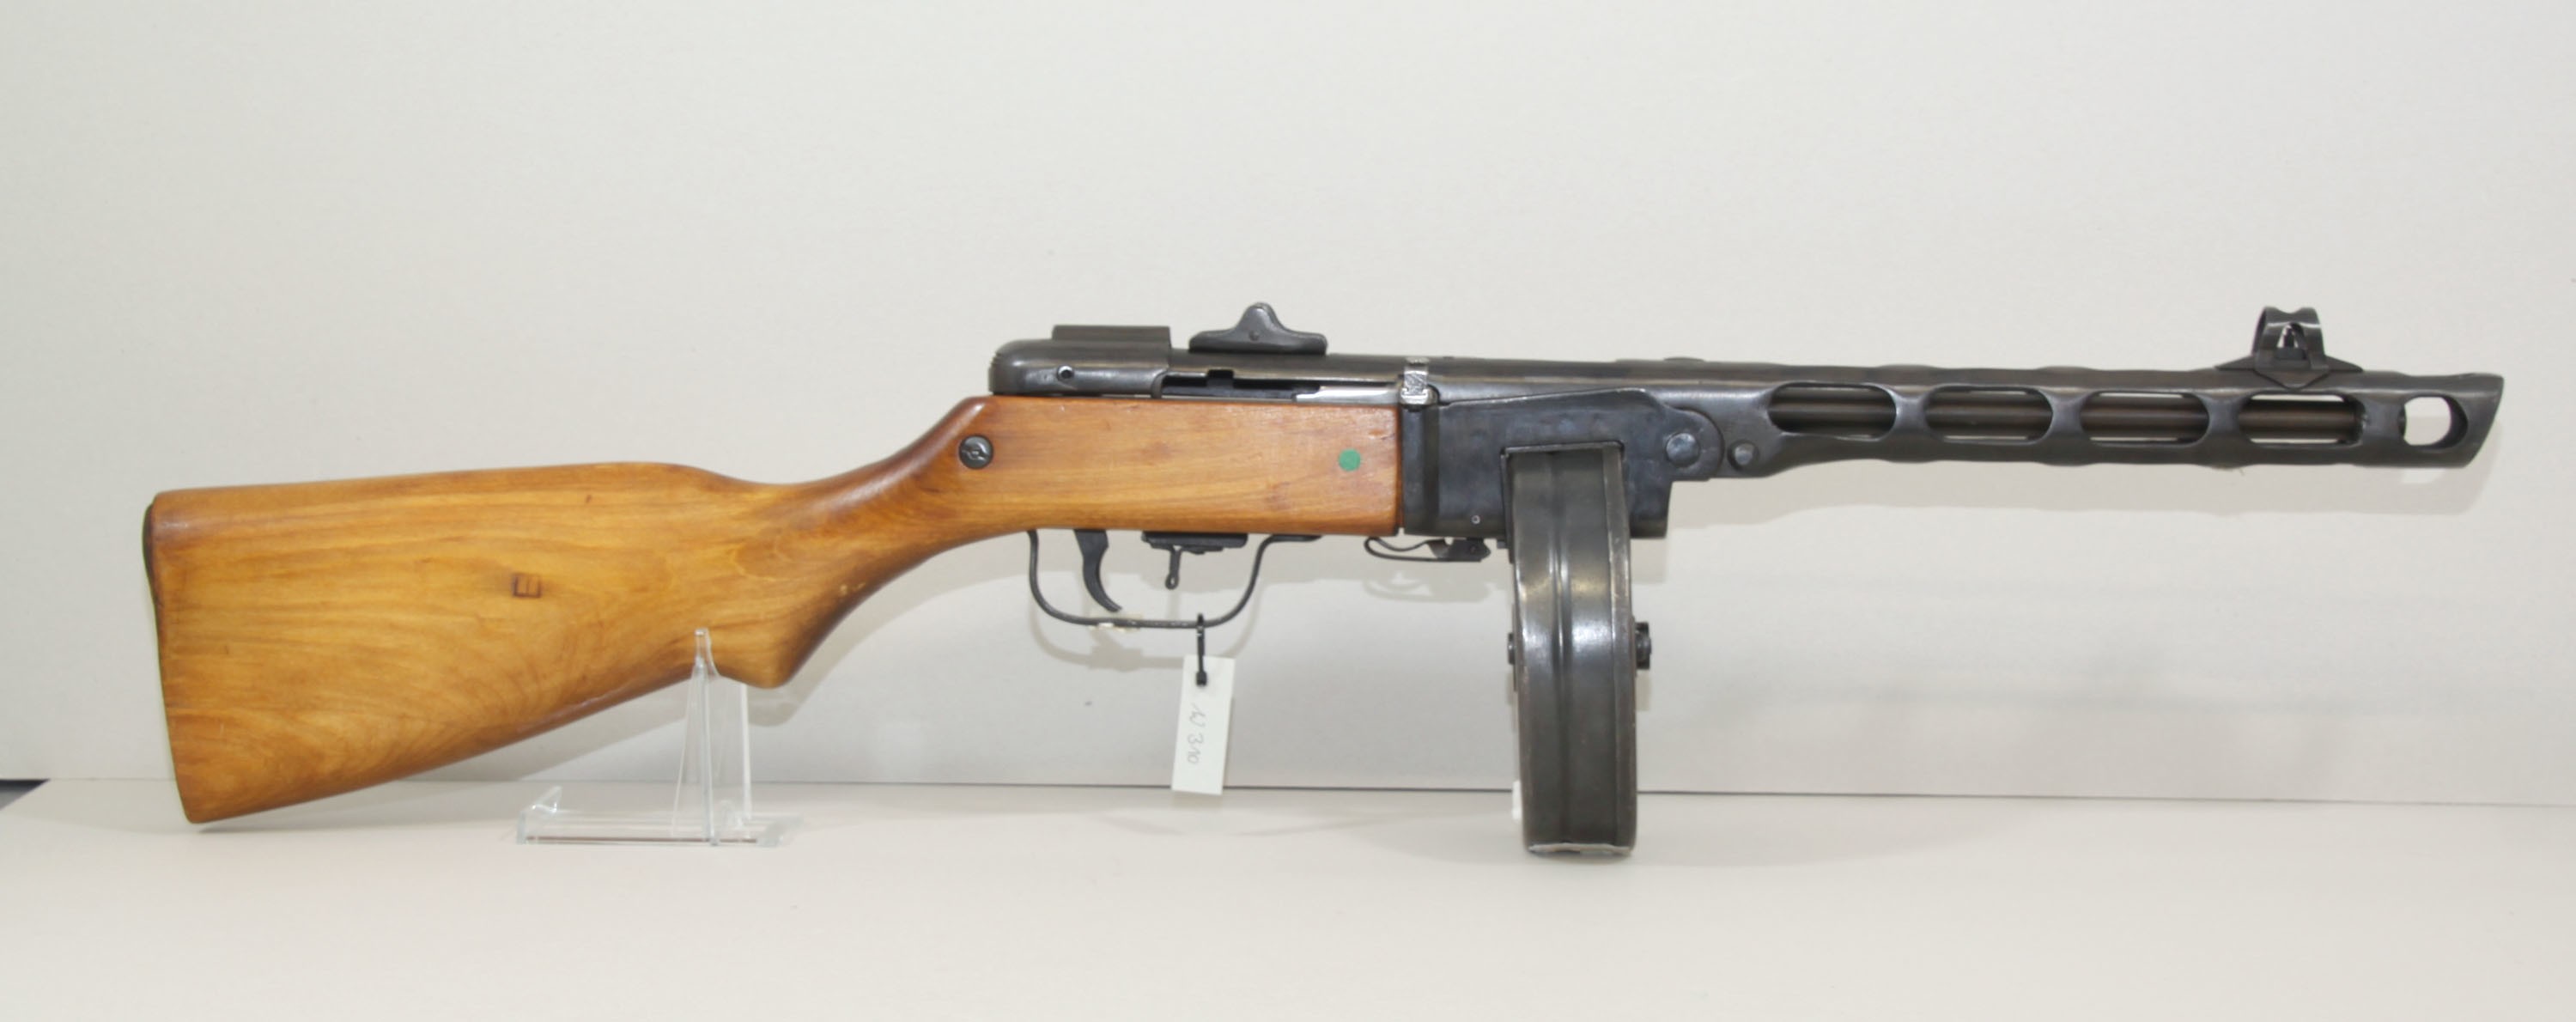 Maschinenpistole "PPSch-41" (Polizeidirektion Dresden RR-F)